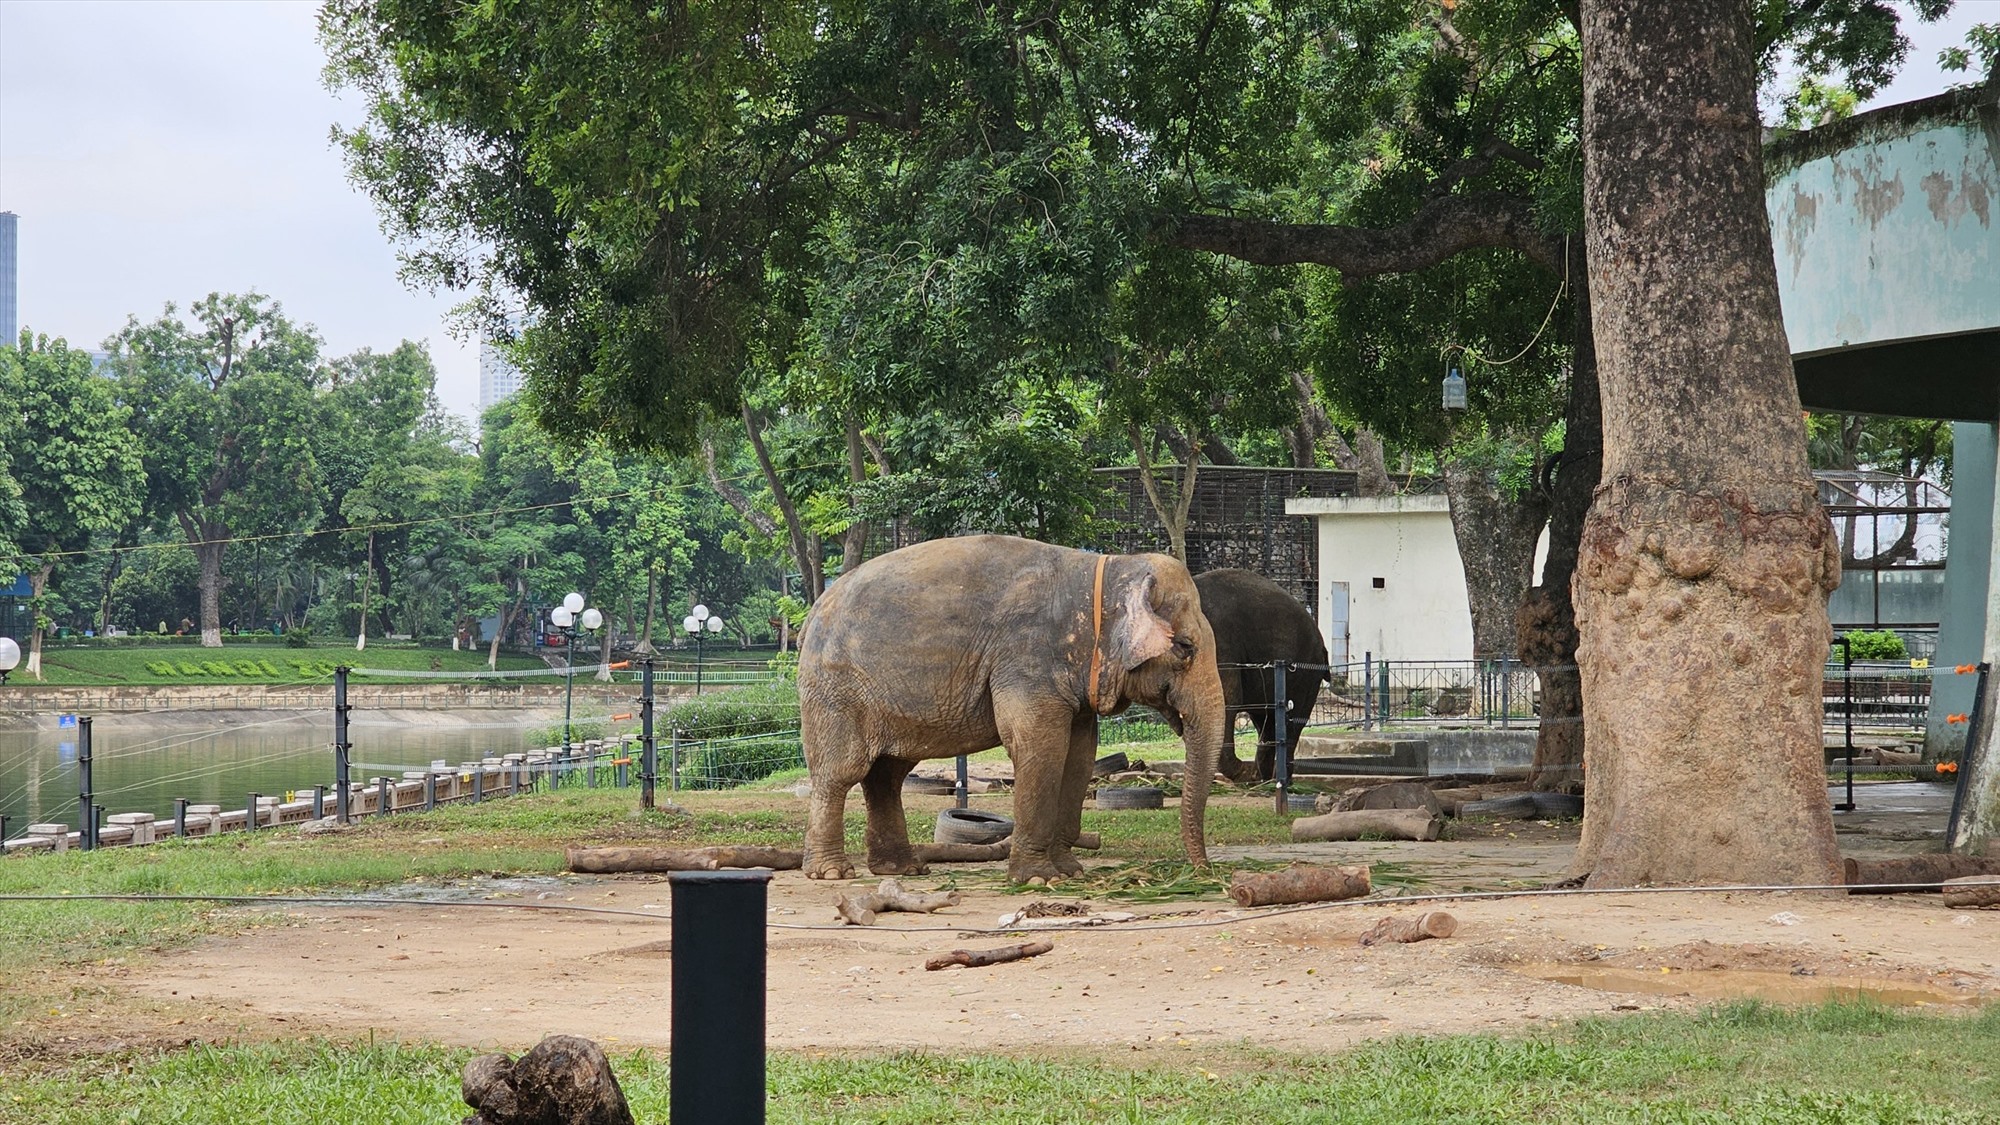 Hiện, tổ chức này đã can thiệp phúc lợi được cho 14 cá thể voi nhà ở Đắk Lắk. Các cá thể voi ở vườn thú Hà Nội nếu cũng được đưa về từ Đắk Lắk thì có thể tính đến phương án trả về môi trường tự nhiên như 14 cá thể voi đã làm. Thế nhưng, các cá thể voi này đã khá già nên các chuyên gia cần ngồi lại để đánh giá xem việc trả về môi trường rừng liệu có khả thi hay không.